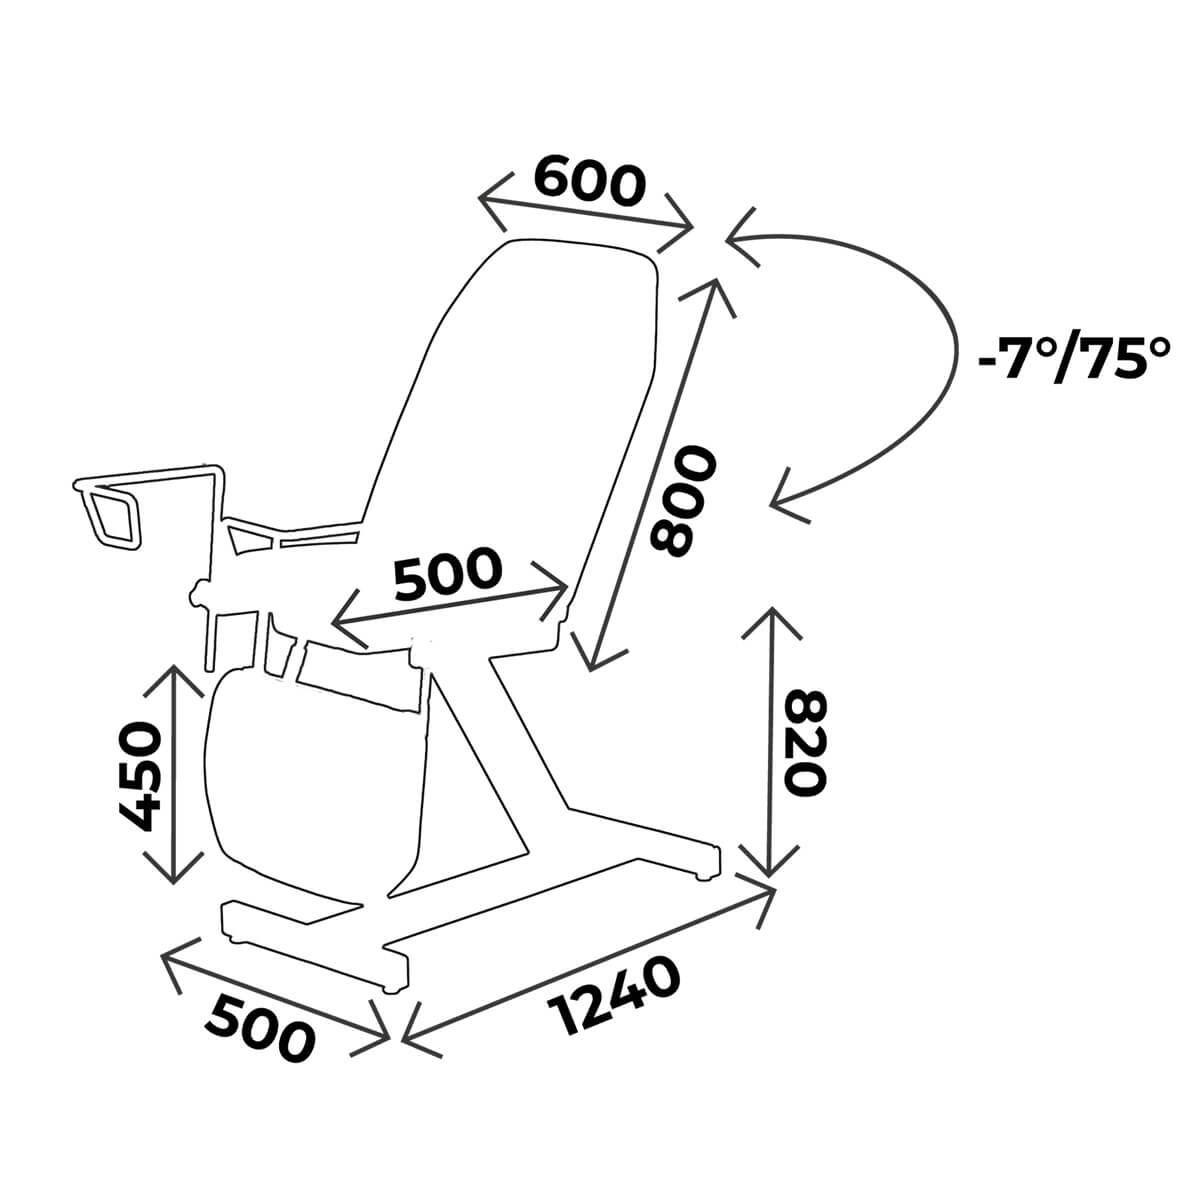 Accessoires pour fauteuils gynéco Carina 625, 725 et 524